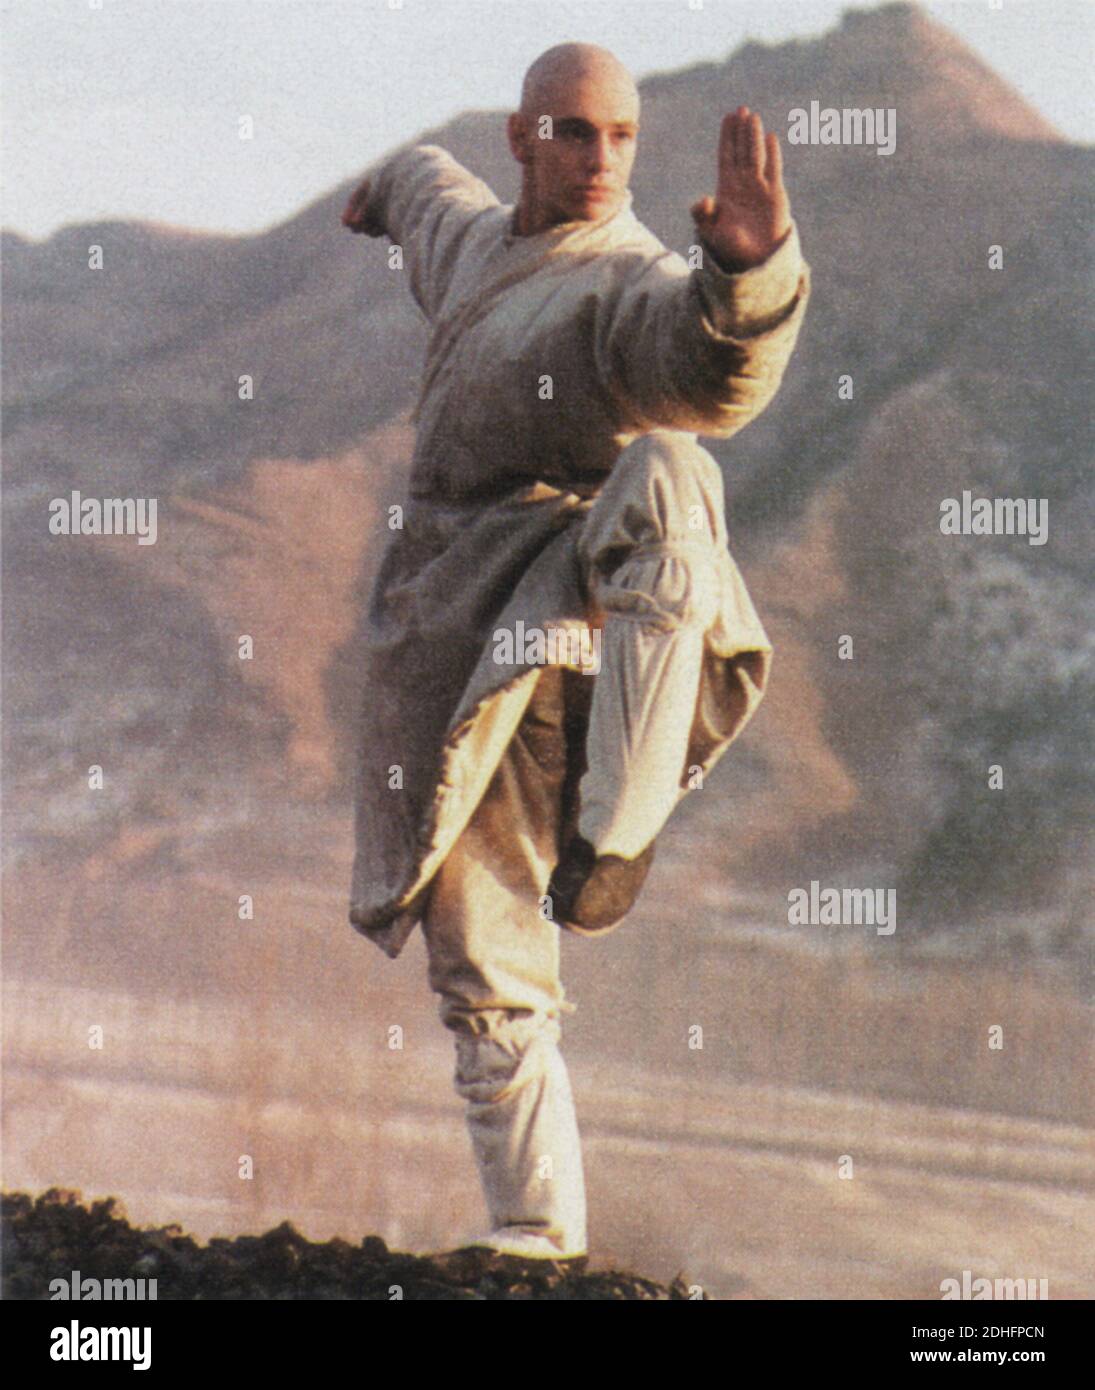 1994 , ITALIA : el actor italiano de cine y televisión GIORGIO PASOTTI ( nacido en Bérgamo , 22 de junio de 1973 ) Cuando estaba en el elenco de la película de acción China artes marciales ' Treasure Hunt ' - ATTIRE - CINE - CINE - TELEVISIONE - personalidad cuando era joven - celebridad - celebridades - personalità celebrità da giovani - giovane - karate - arti marziali - WU SHU --- Archivio GBB Foto de stock